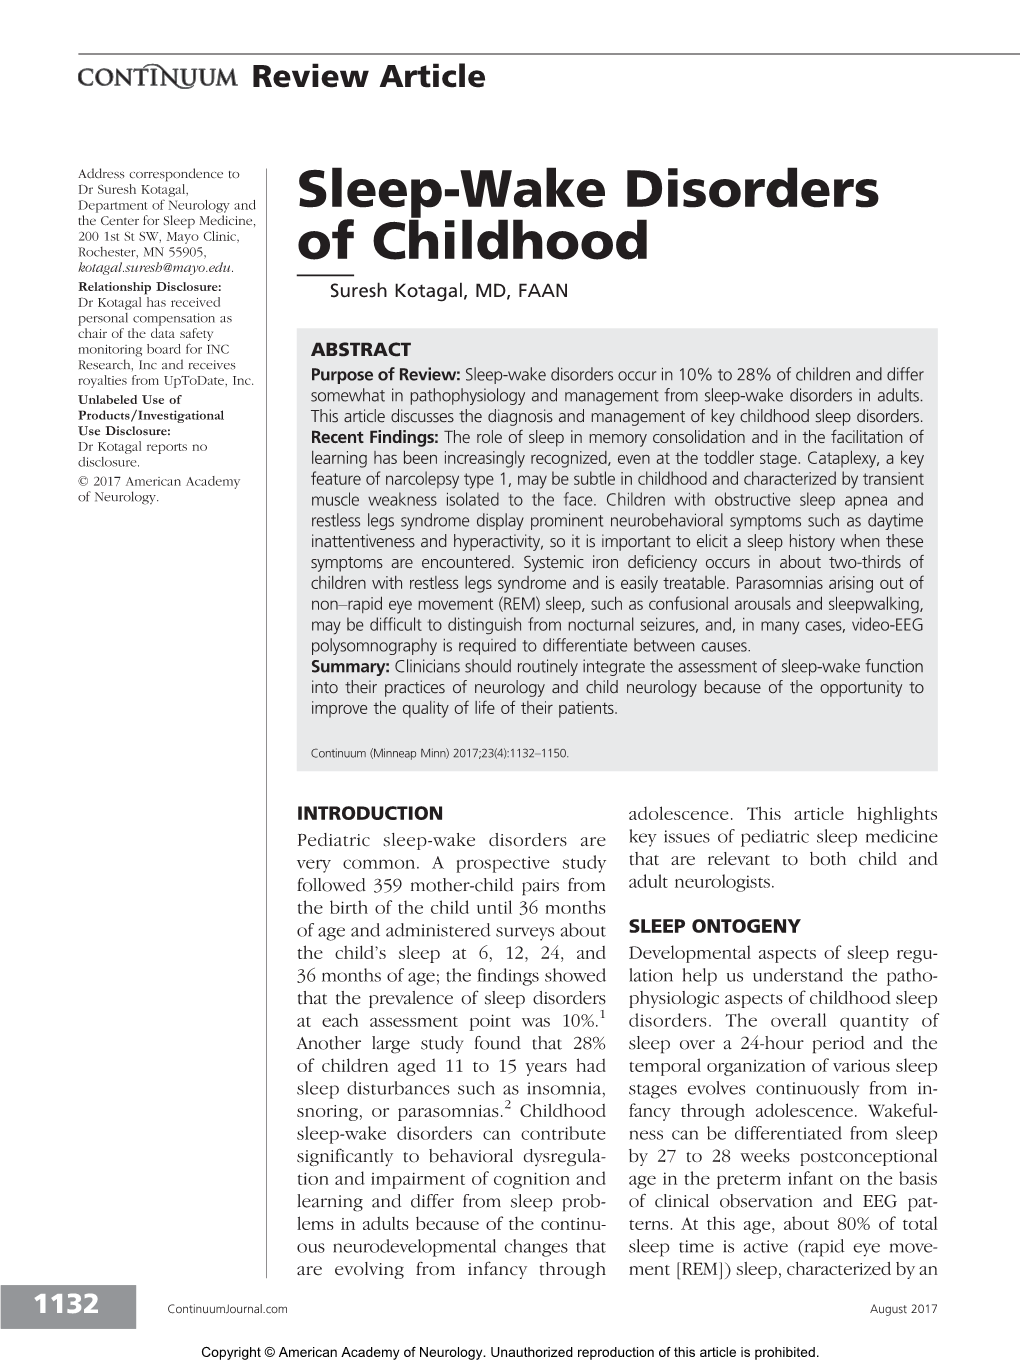 Sleep-Wake Disorders of Childhood